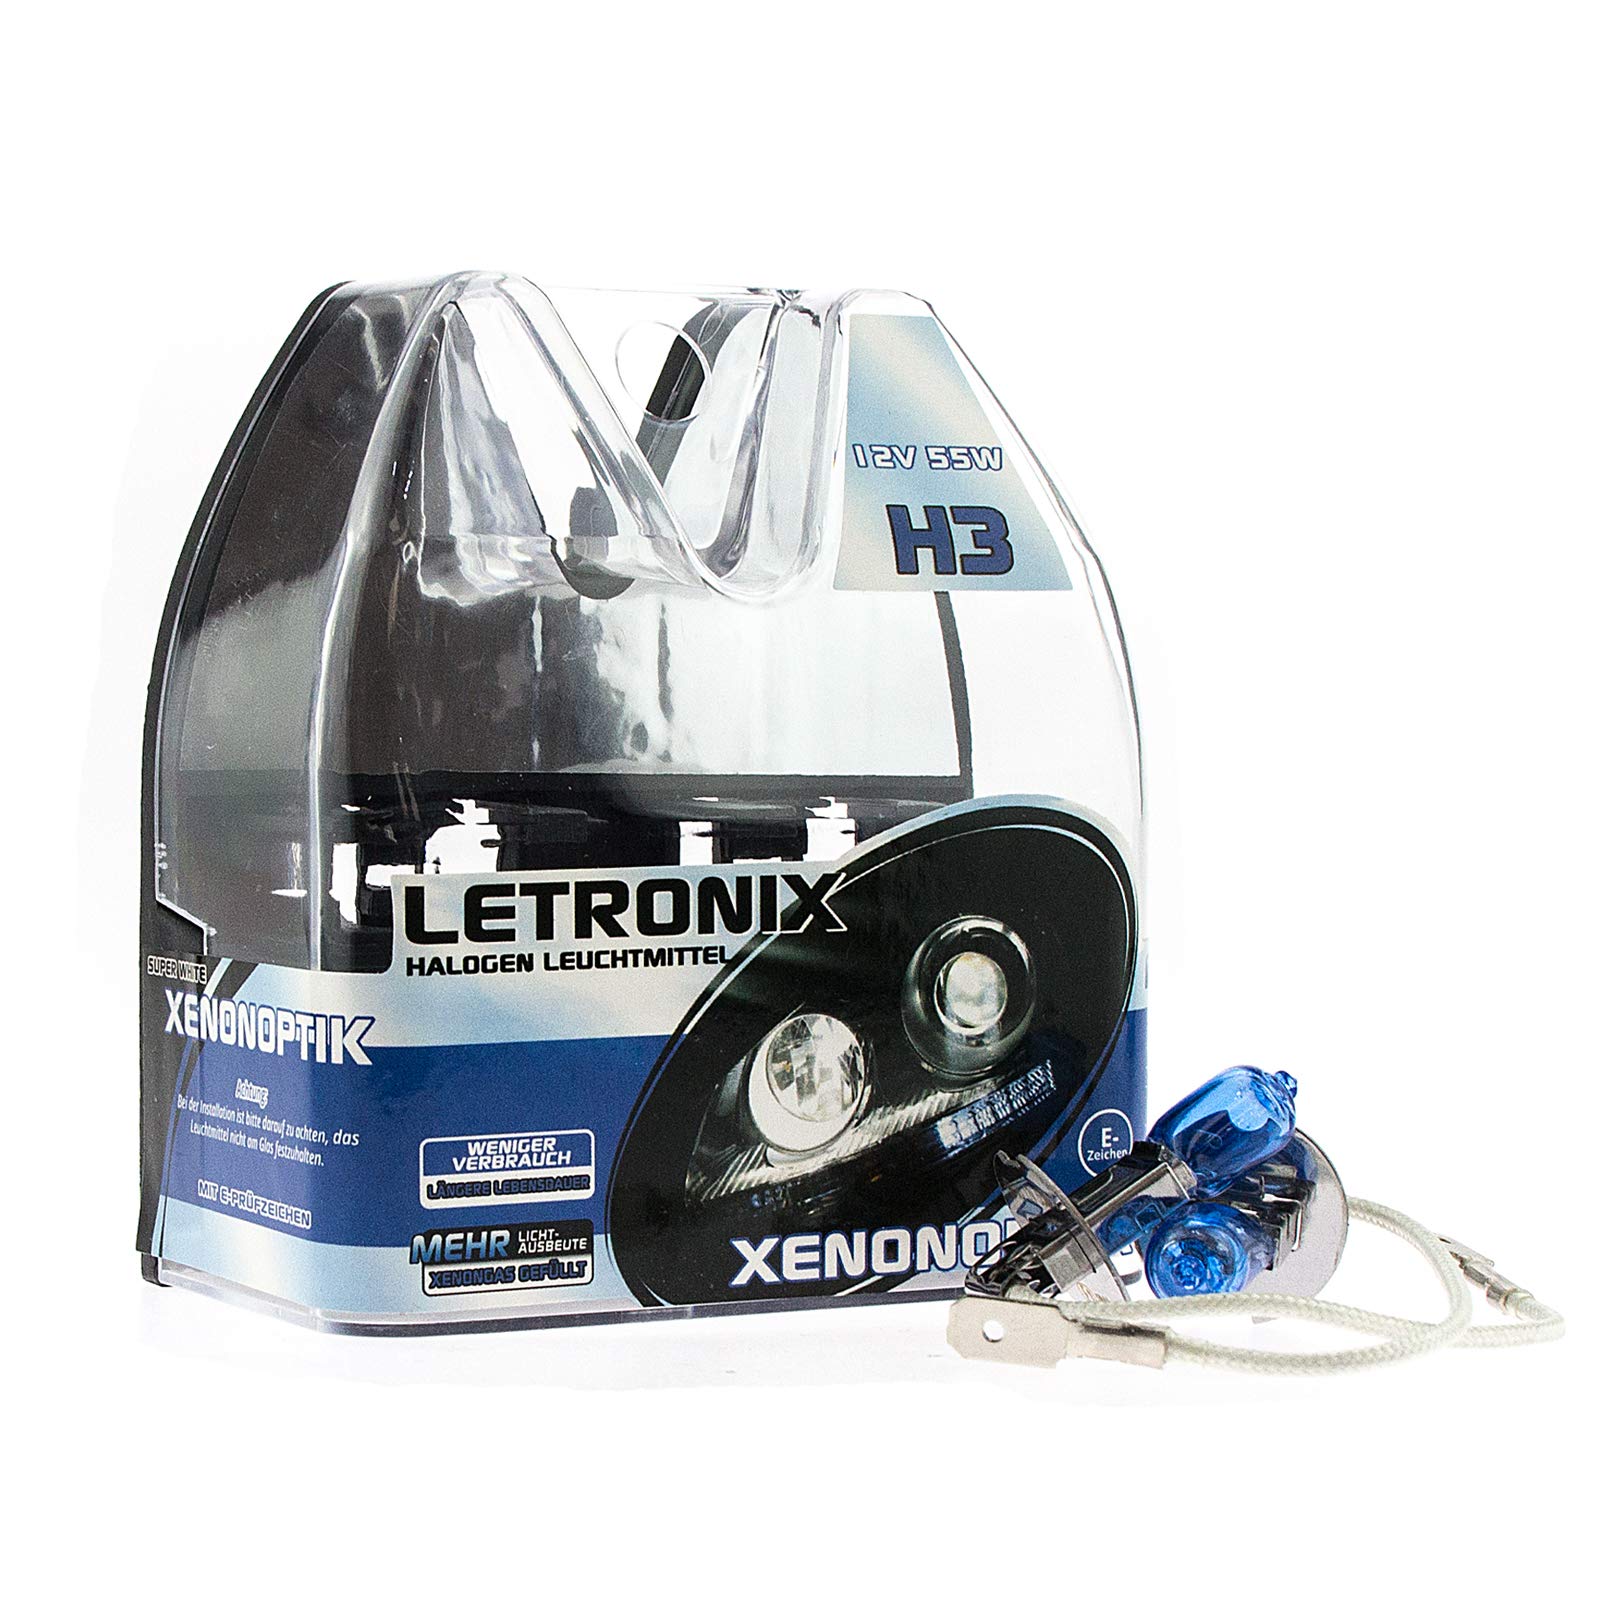 LETRONIX Halogen Auto Lampen H3 12V 8500K Kalt Weiß Xenon Optik Gas Ultra White Look Birnen Lampe Abblendlicht Nebelscheinwerfer Fernlicht Kurvenlicht Zulassung E-Prüfzeichen (LED Optik) (H3 55W) von letronix